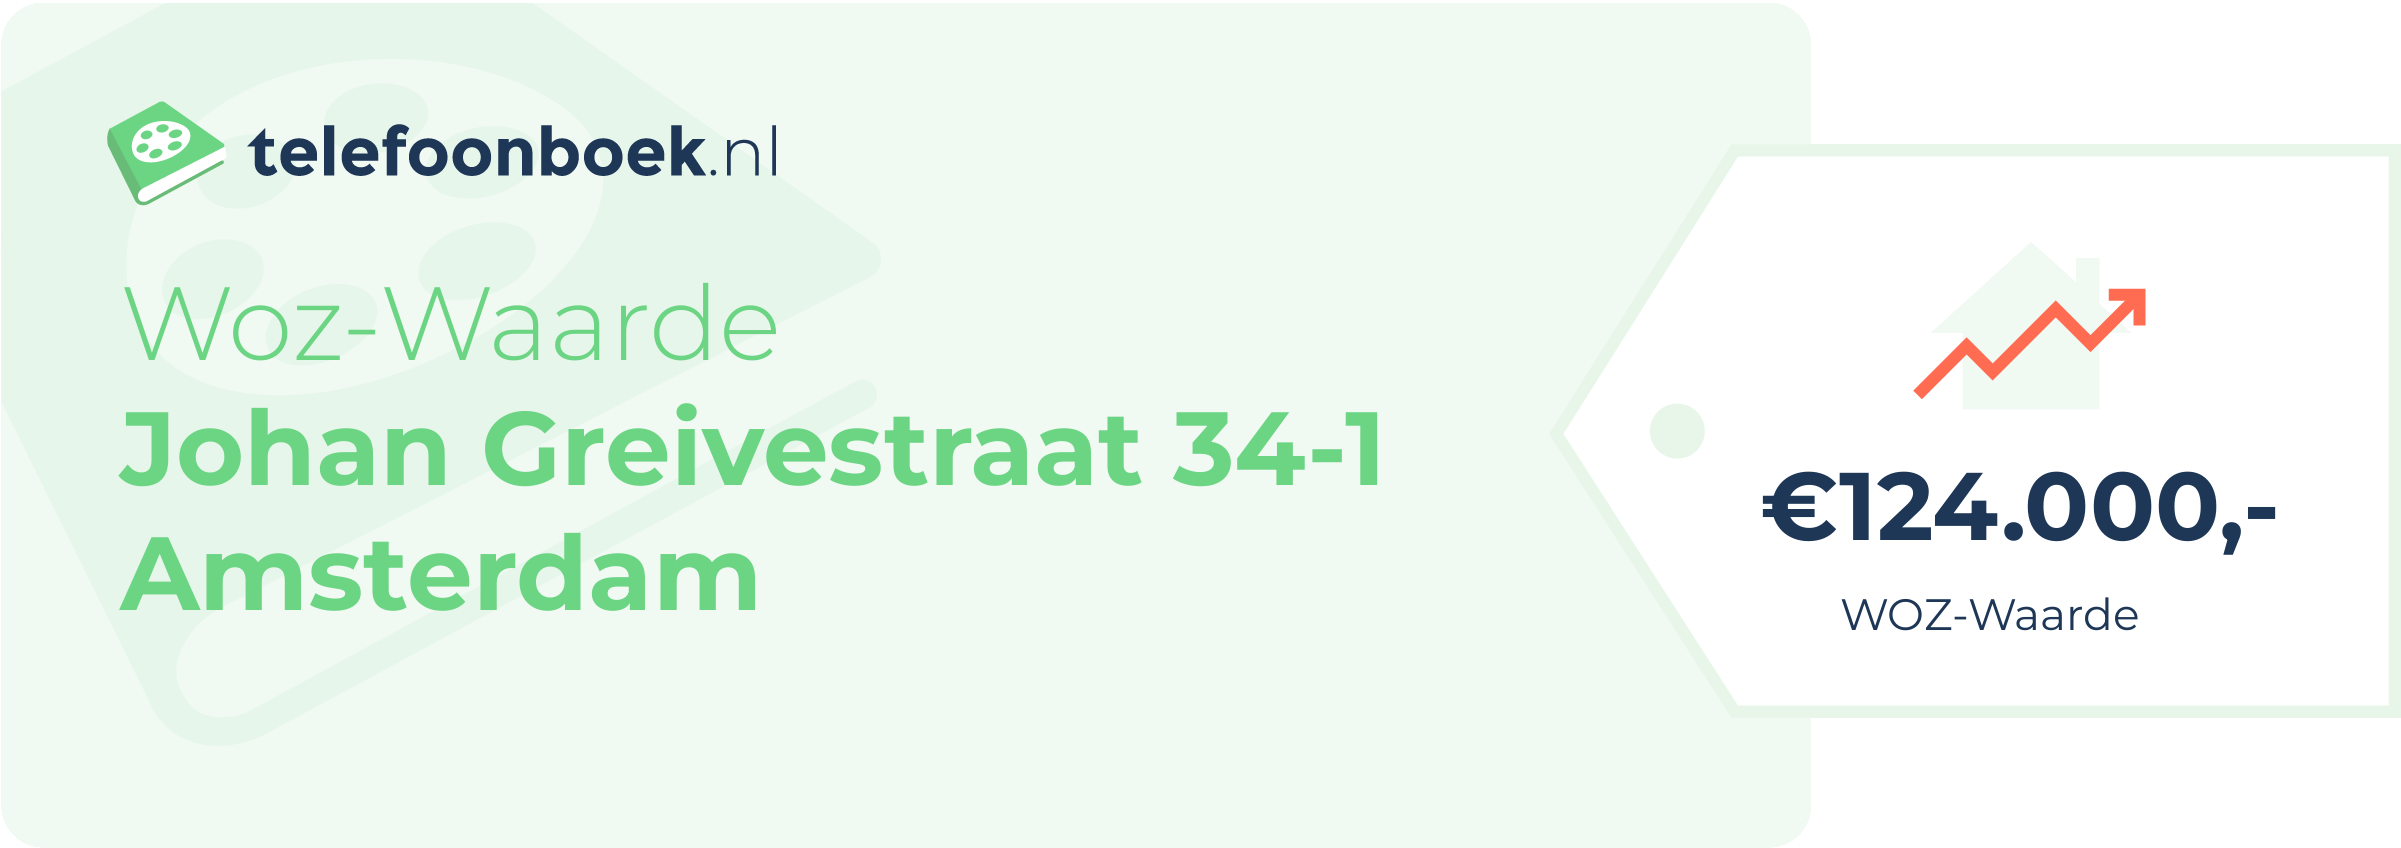 WOZ-waarde Johan Greivestraat 34-1 Amsterdam